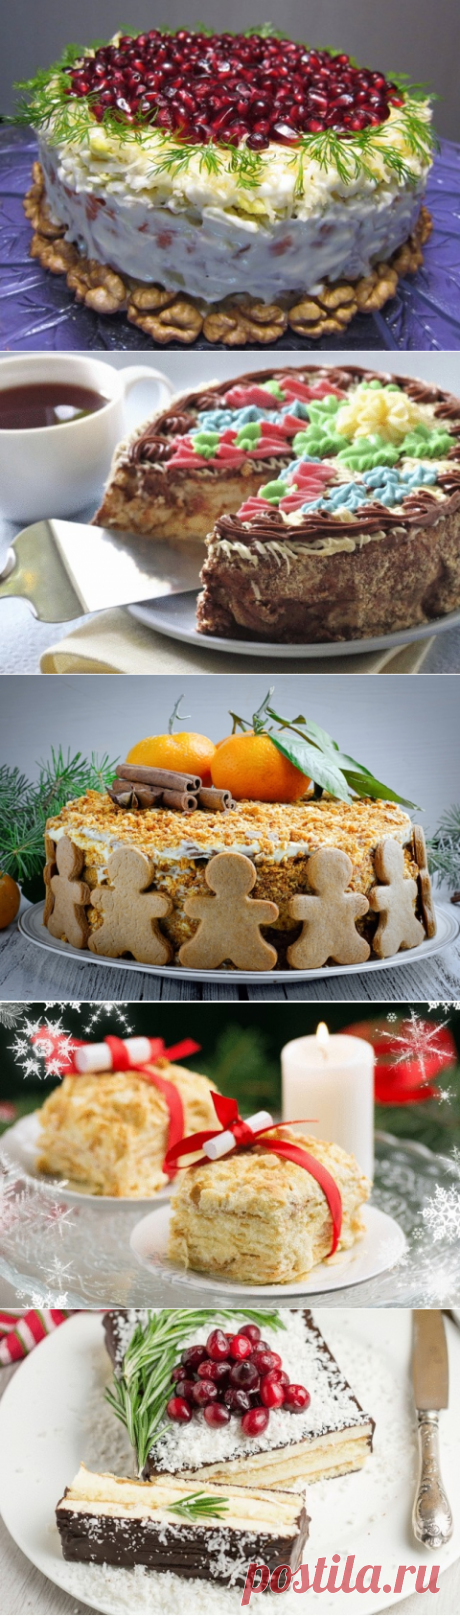 Торт на Новый год — 5 главных советских рецептов